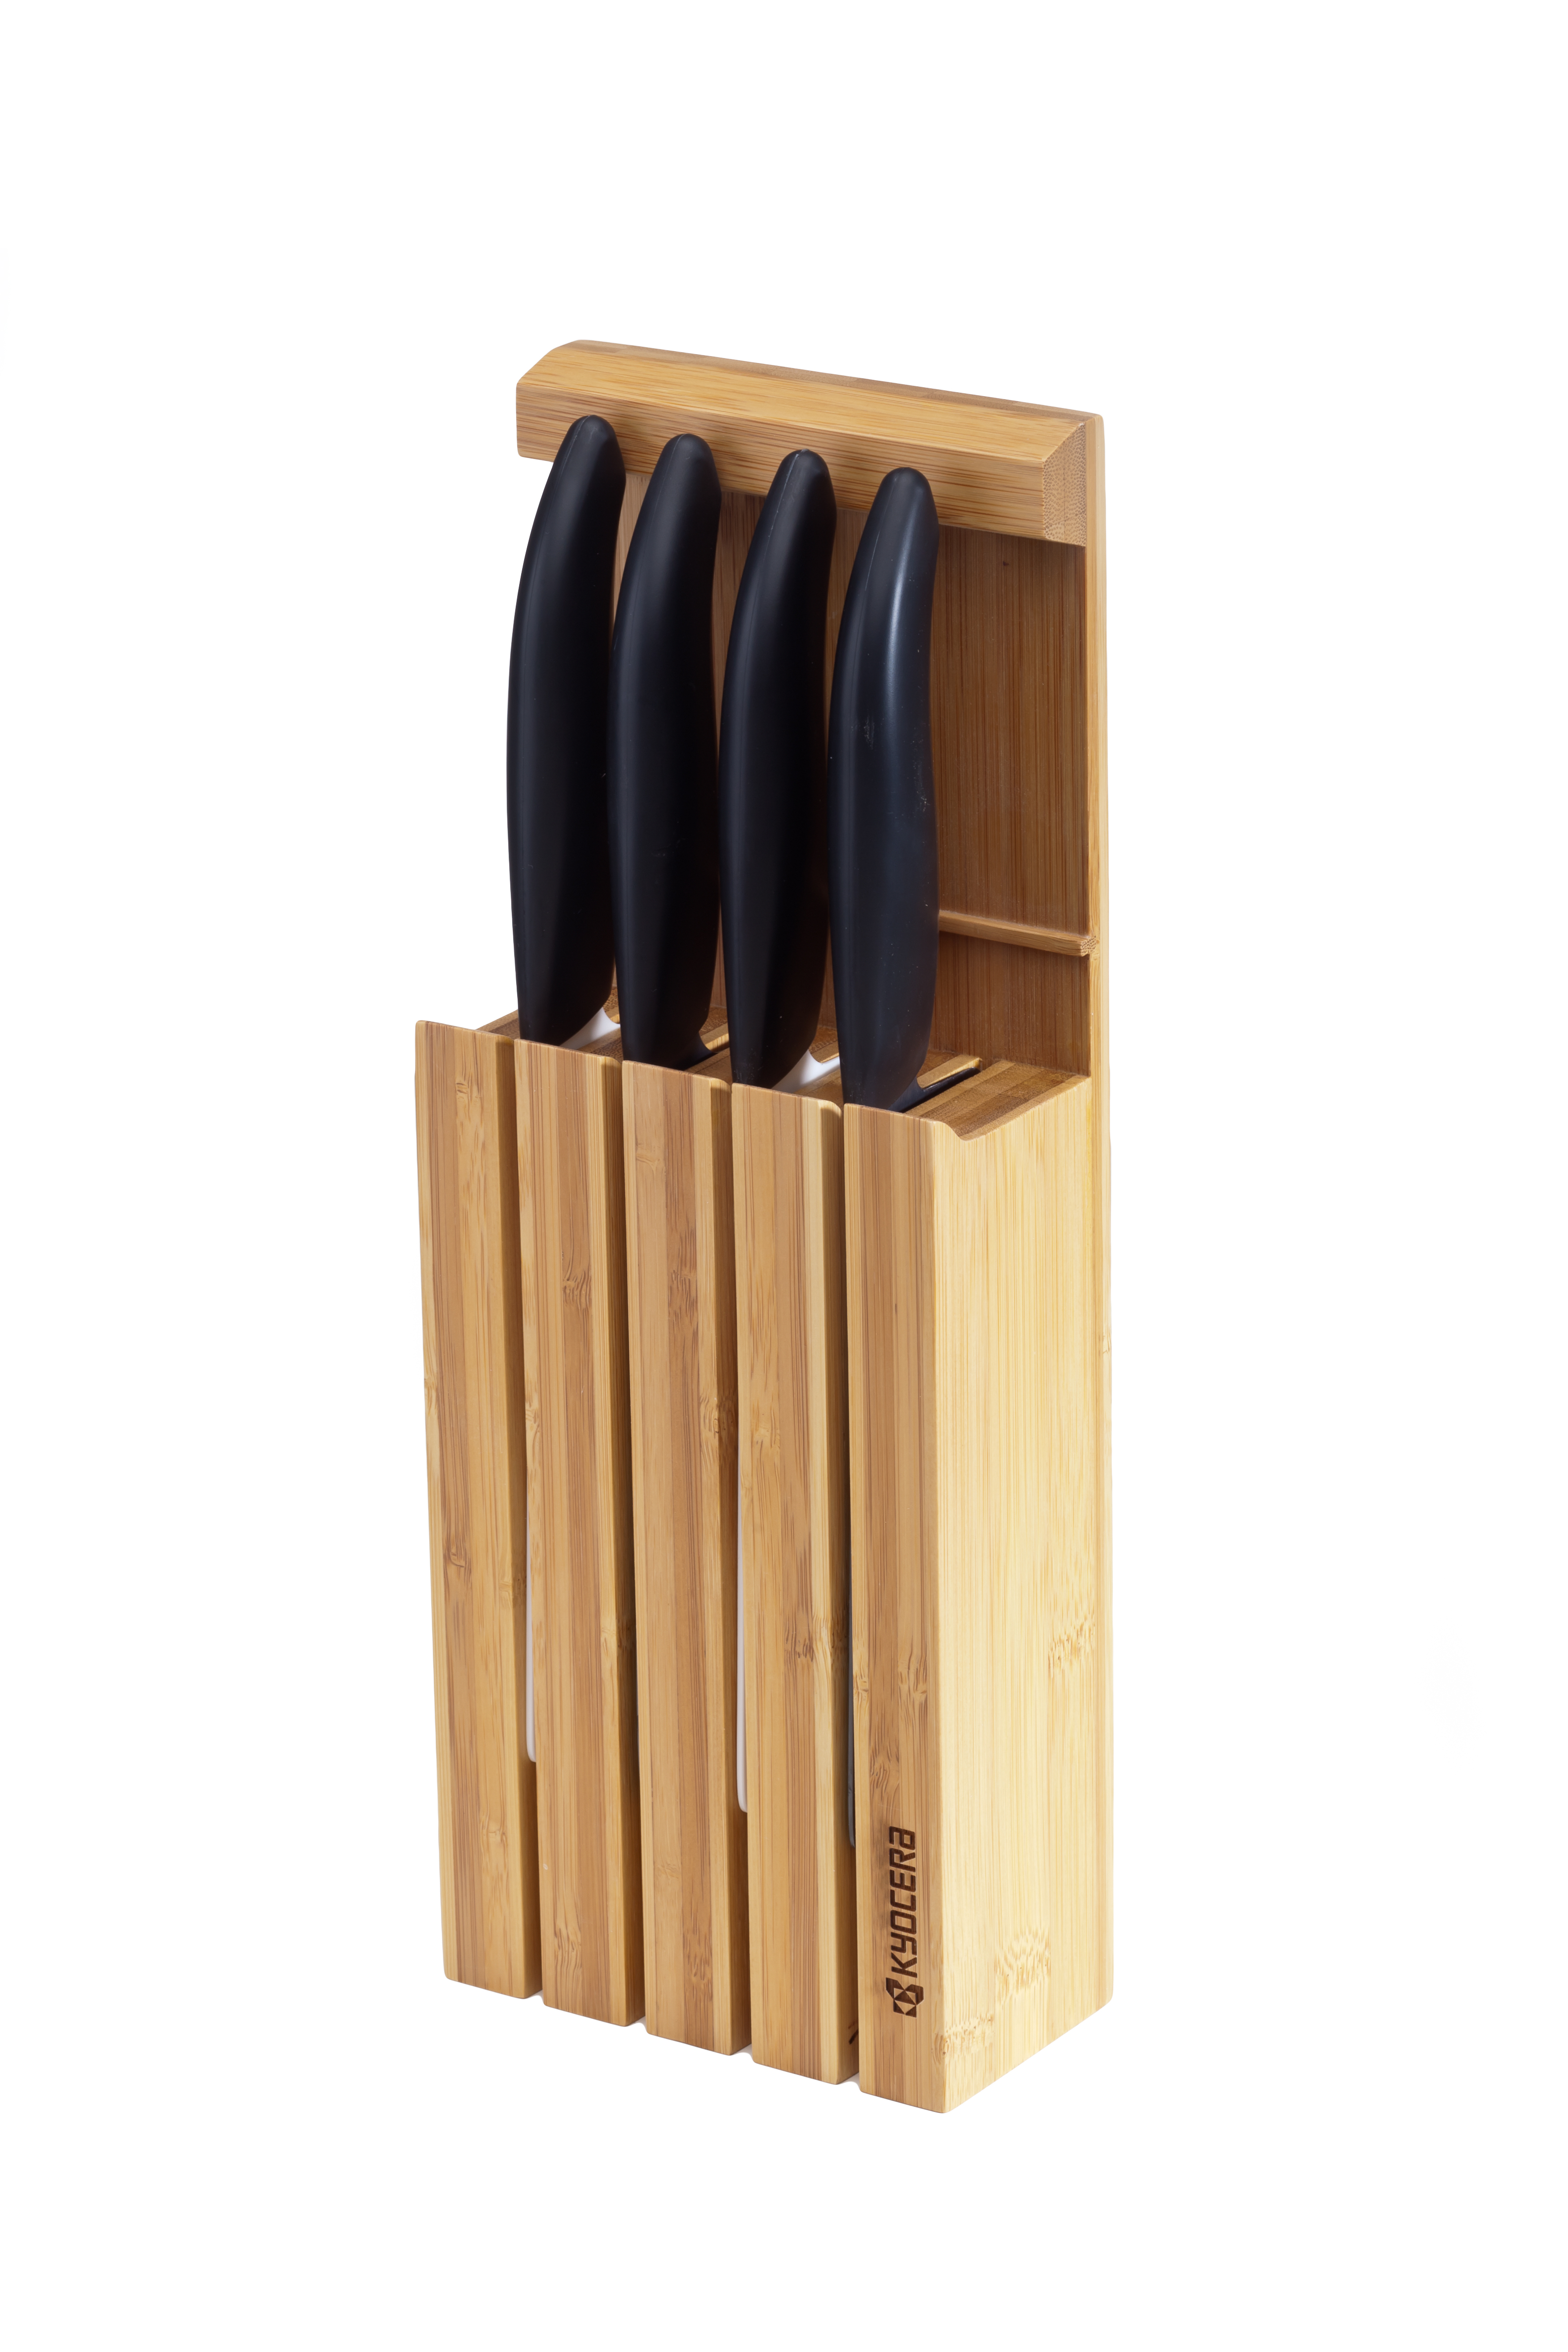 Bambus-Messerblock inkl. 4 GEN-Messer